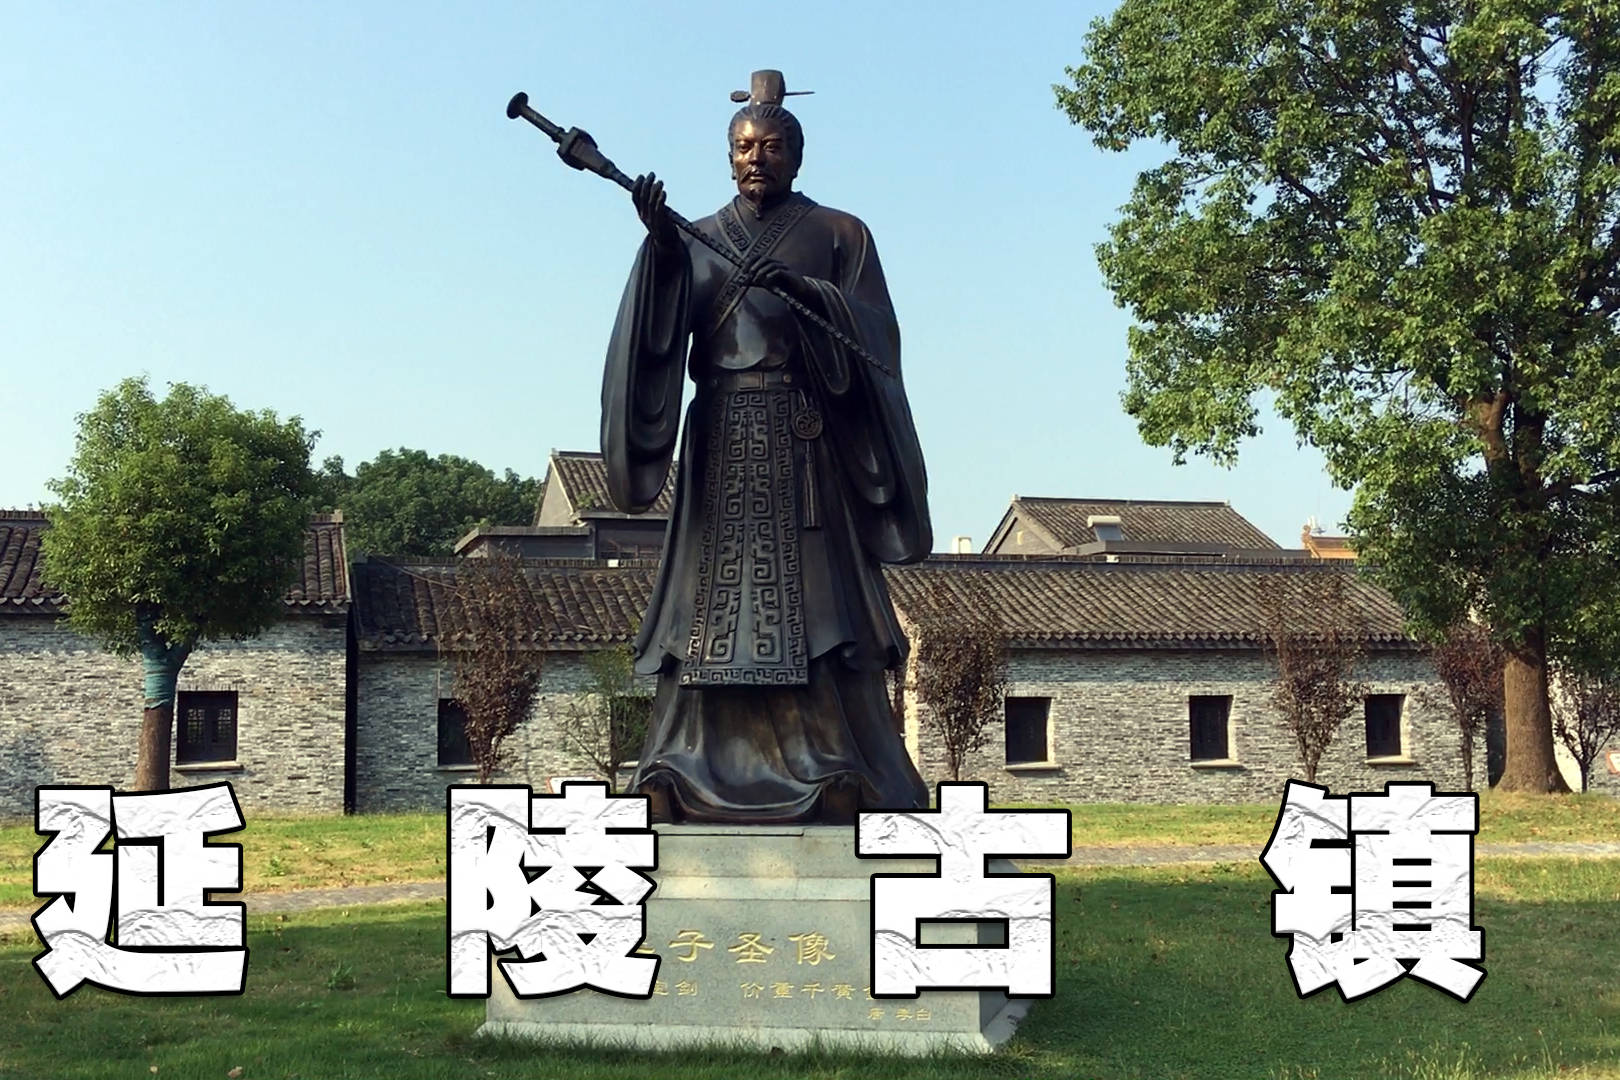 延陵古镇位于镇江丹阳市的西南是一座历史悠久的千年古镇